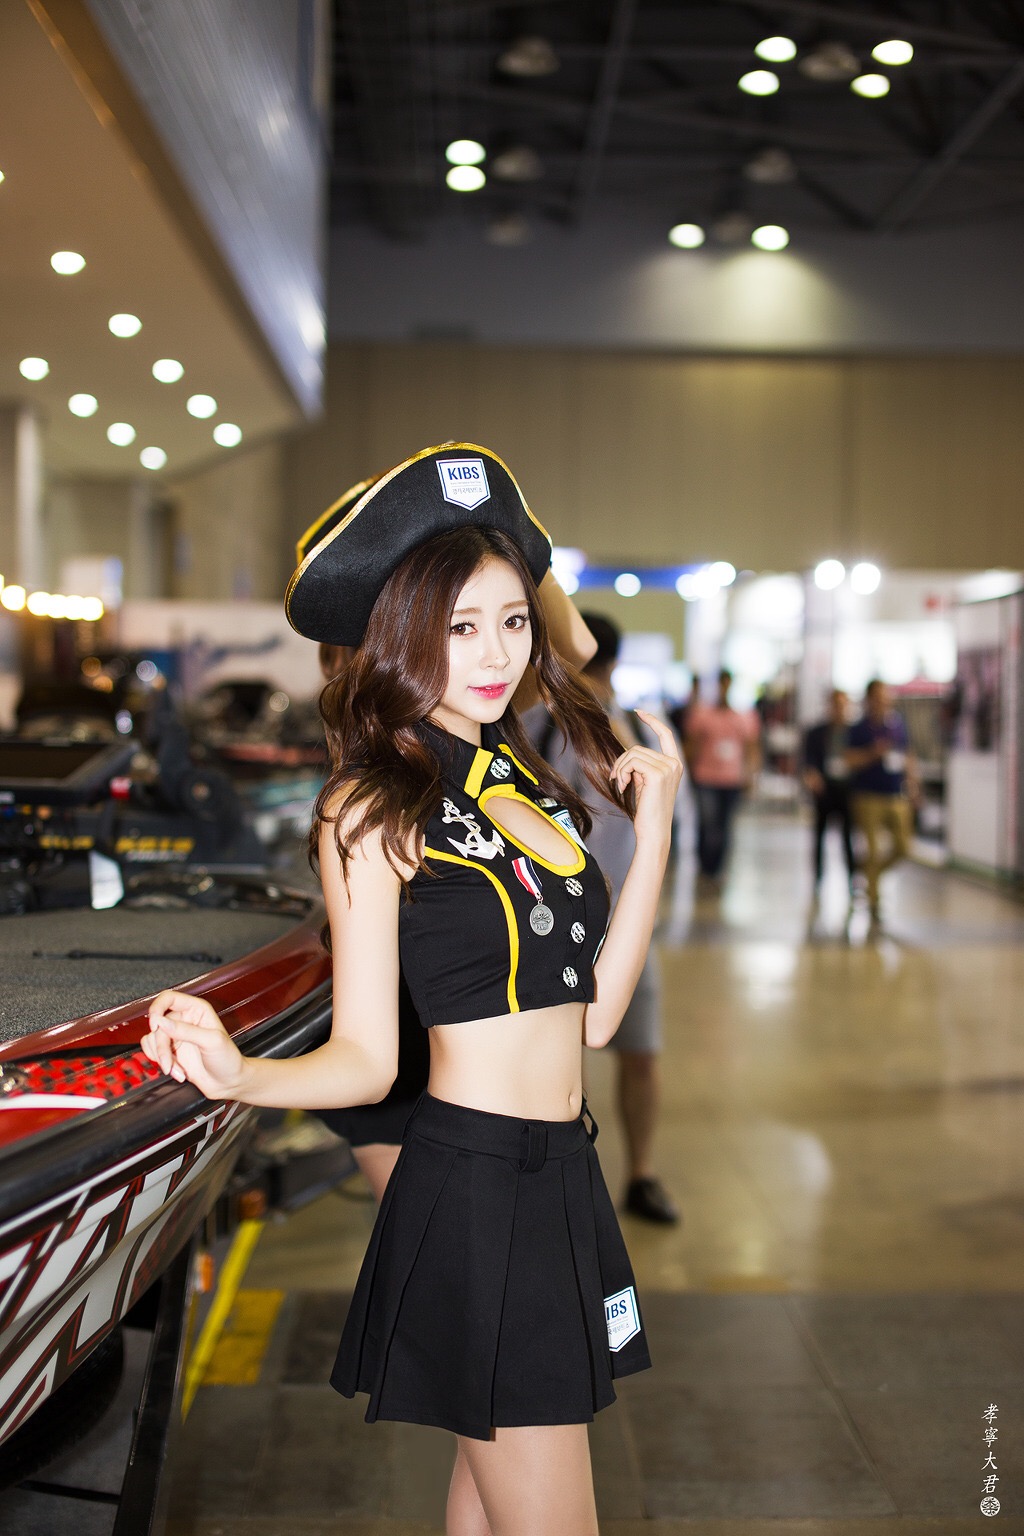 韩国迷你裙少妇车模翘臀后进美女蕾丝图片